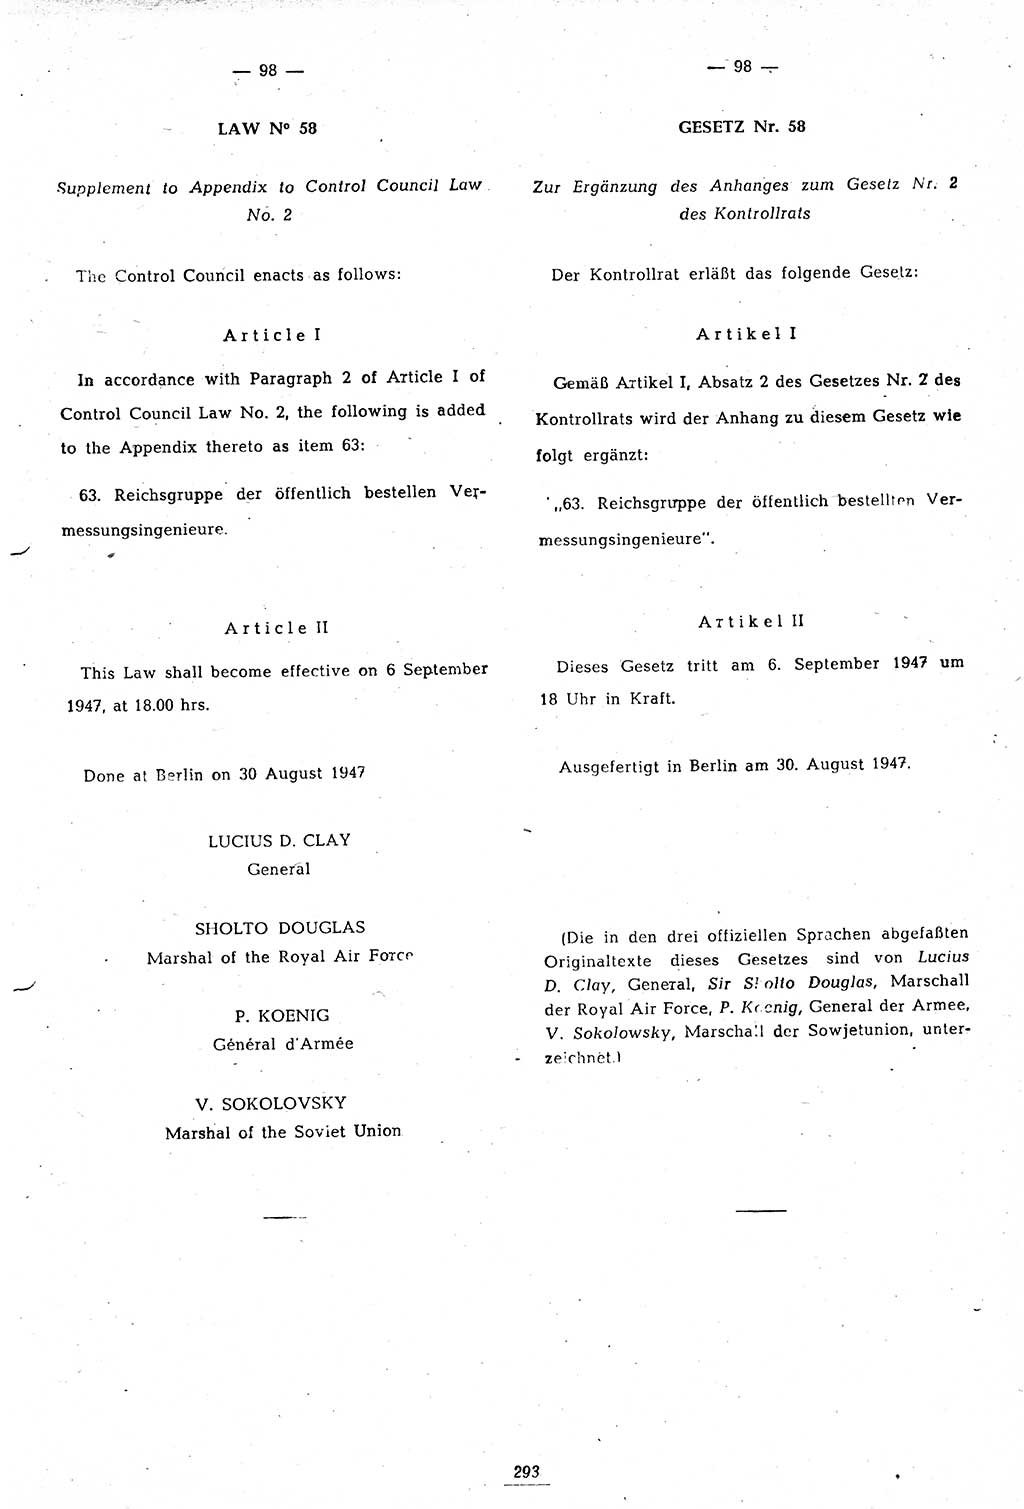 Amtsblatt des Kontrollrats (ABlKR) in Deutschland 1947, Seite 293/2 (ABlKR Dtl. 1947, S. 293/2)